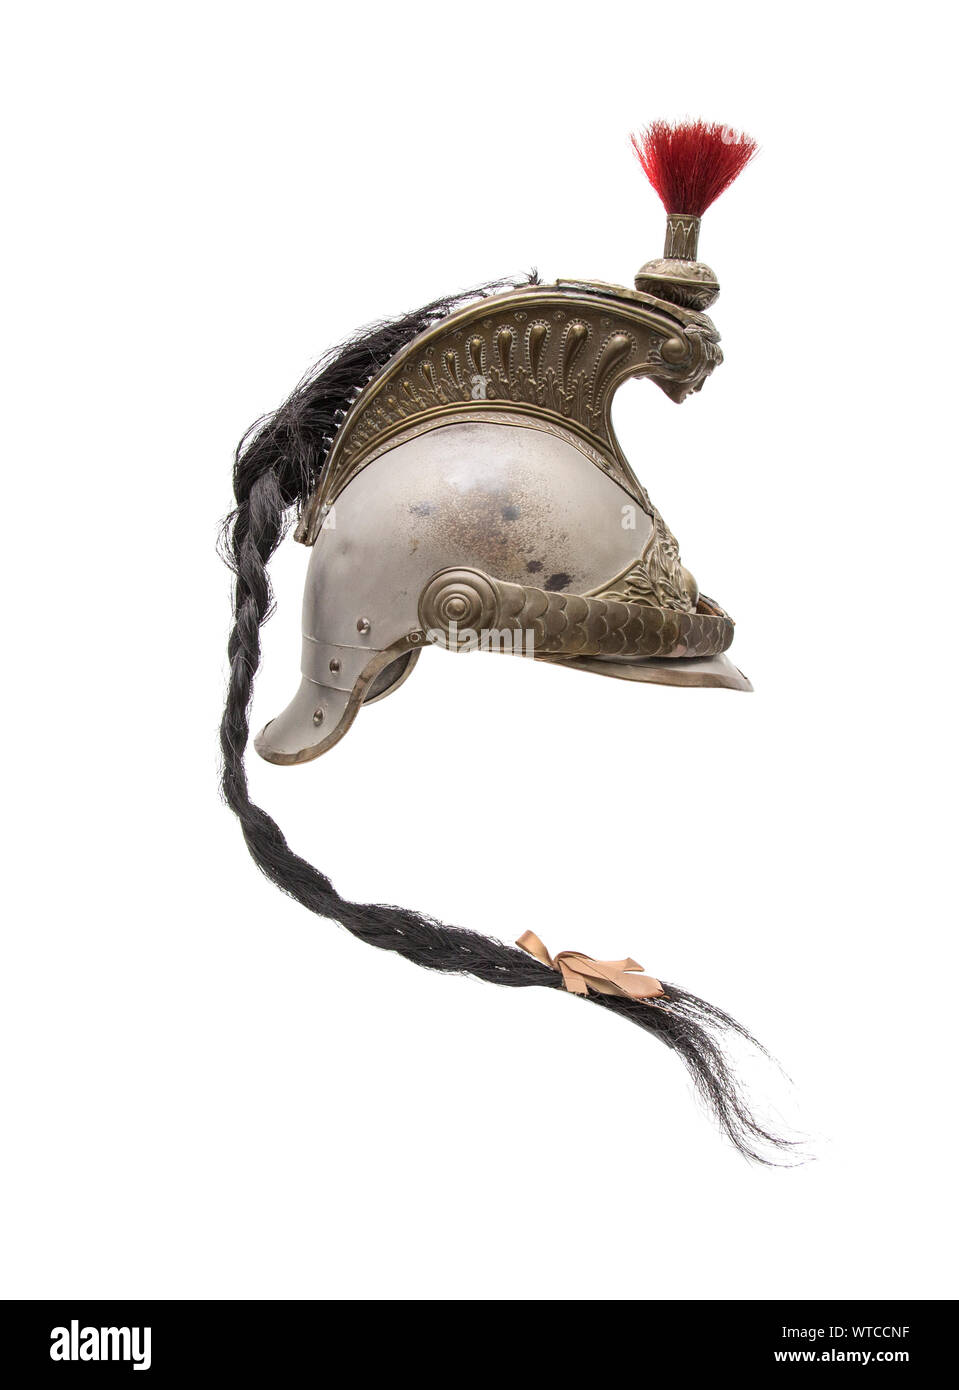 Casco Cuirassier francés del siglo XIX. El casco tiene un cráneo de acero con cantos de latón, adaptadores y una cresta con repujado decoración, la cabeza Foto de stock